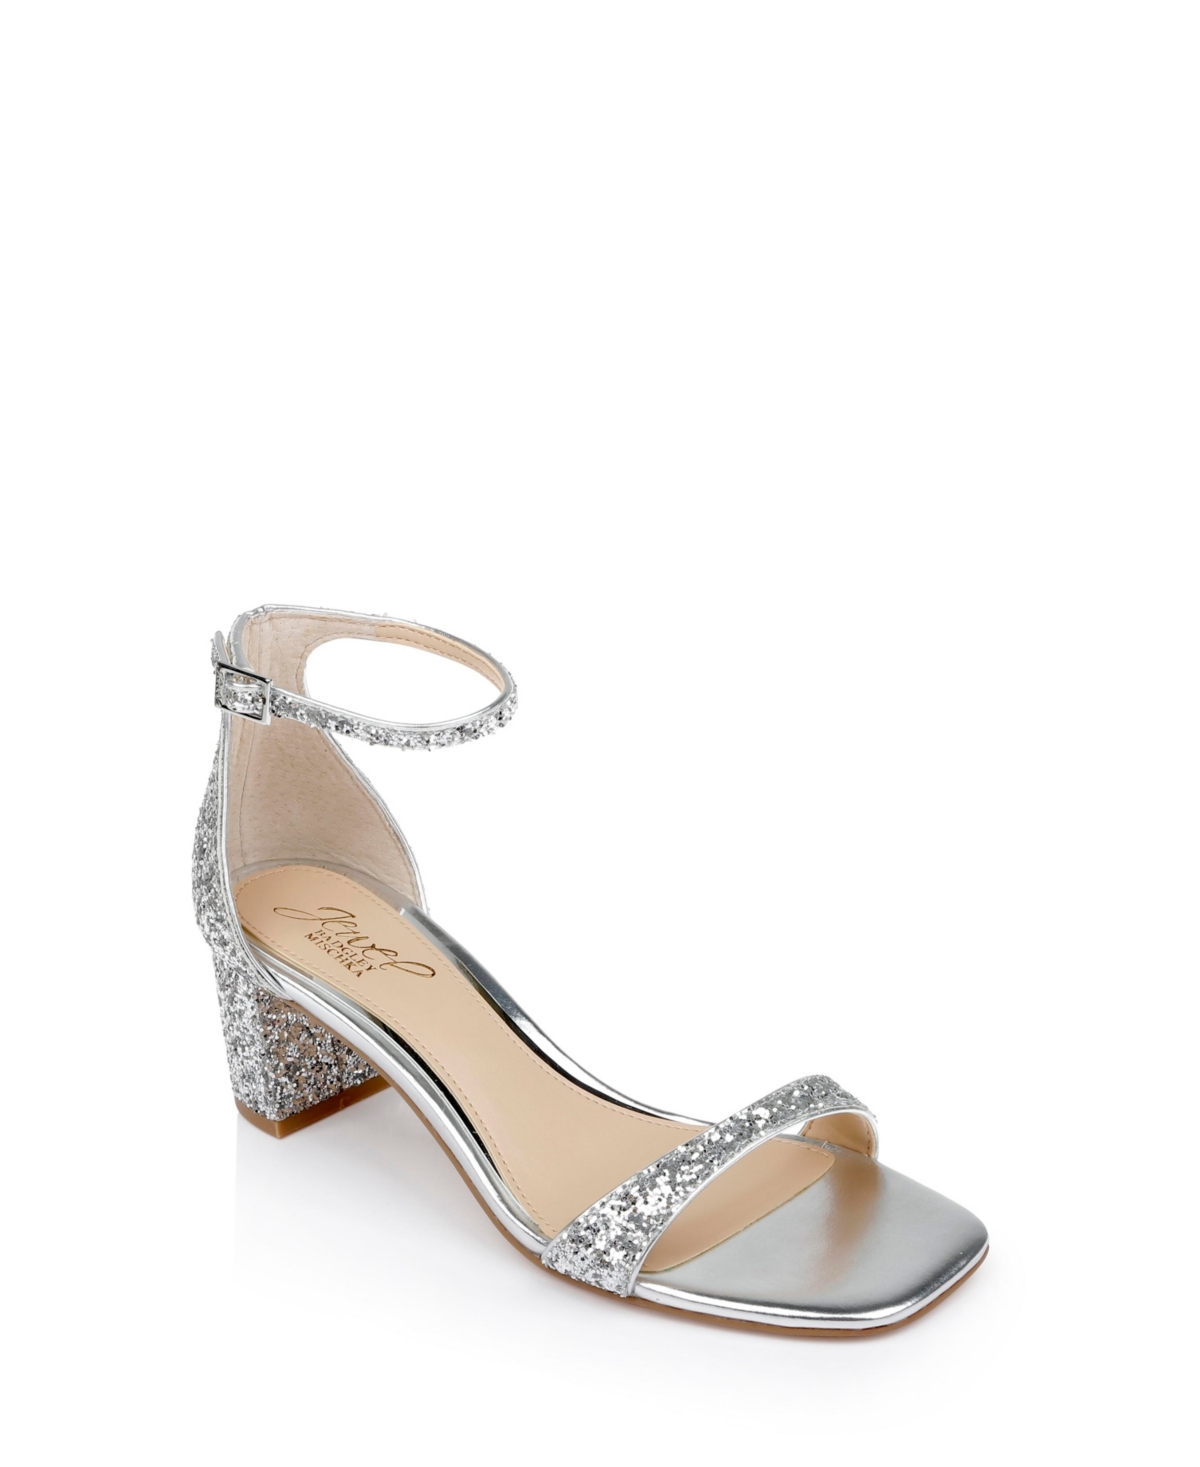 Women's Reese Block Heel Evening Sandals - Silver Glitter